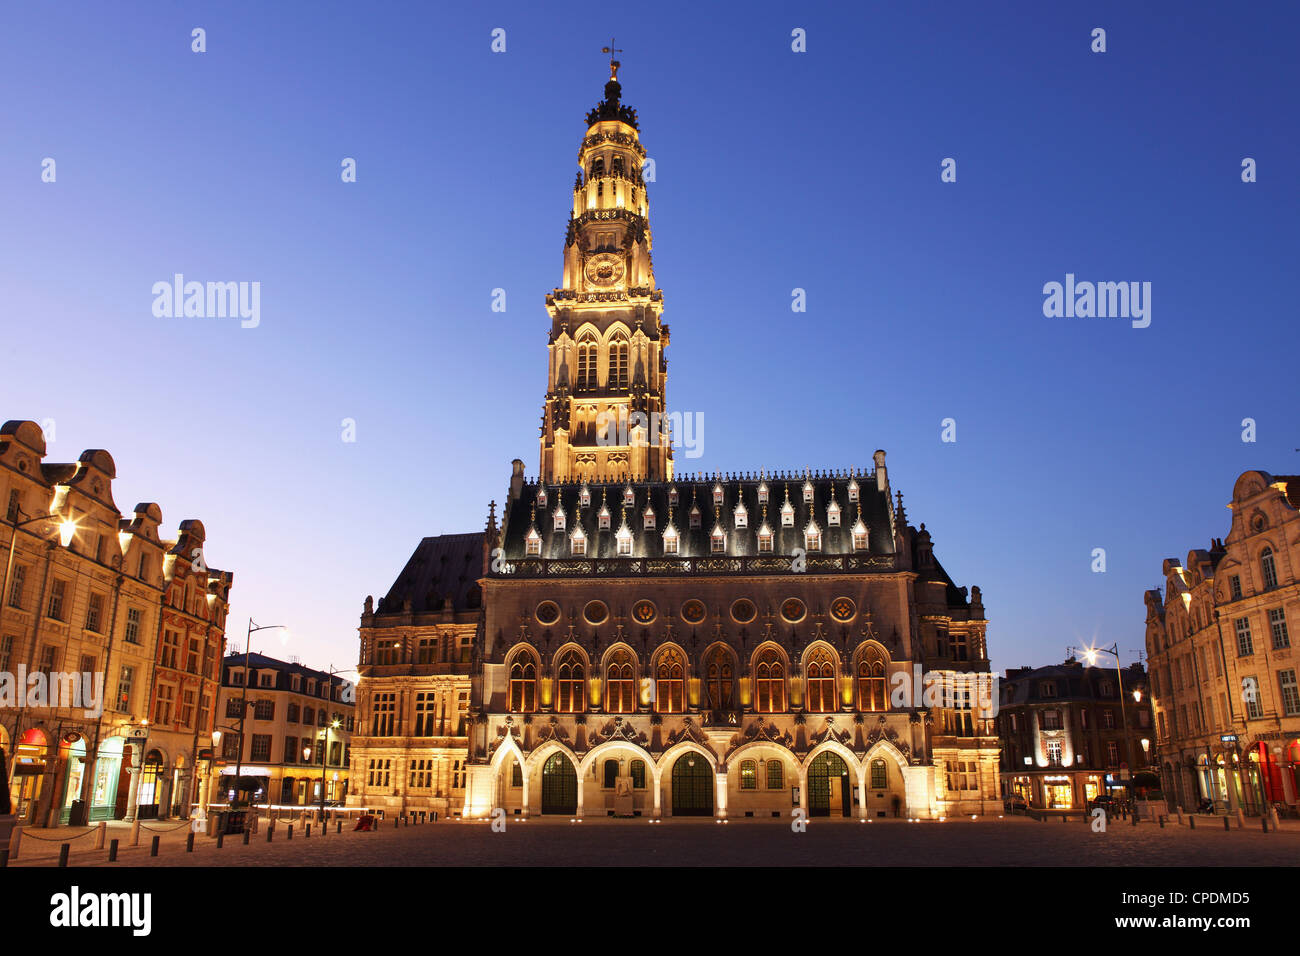 Ayuntamiento gótico (Hotel de Ville) y la torre del campanario, Petite lugar (Place des Heros), Arras, Nord-Pas de Calais, Francia, Europa Foto de stock